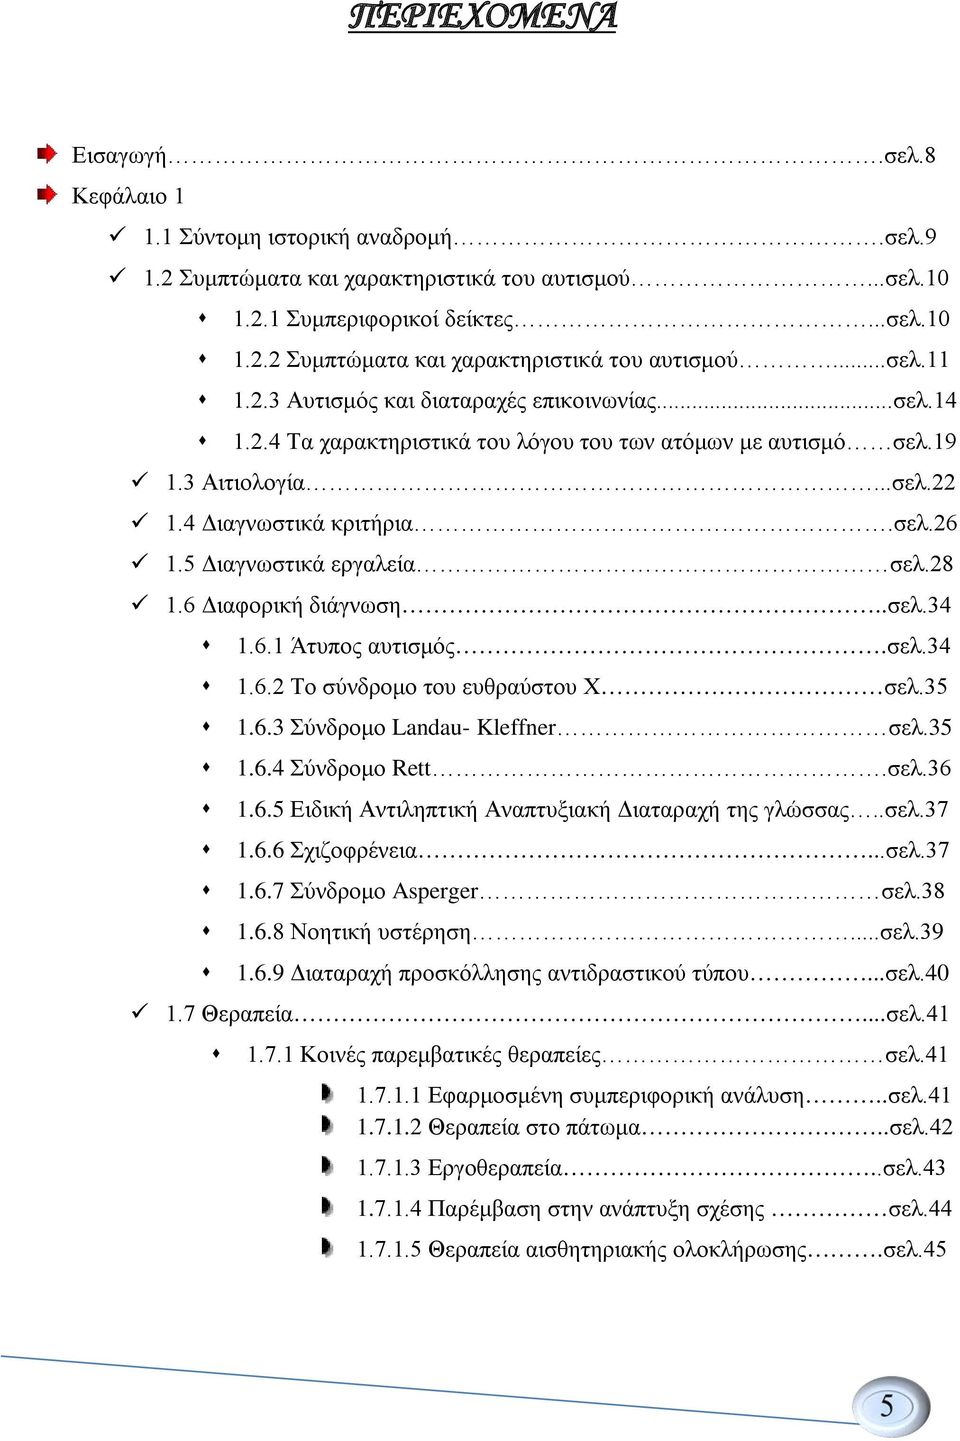 5 Διαγνωστικά εργαλεία σελ.28 1.6 Διαφορική διάγνωση..σελ.34 1.6.1 Άτυπος αυτισμός.σελ.34 1.6.2 Το σύνδρομο του ευθραύστου Χ σελ.35 1.6.3 Σύνδρομο Landau- Kleffner σελ.35 1.6.4 Σύνδρομο Rett.σελ.36 1.